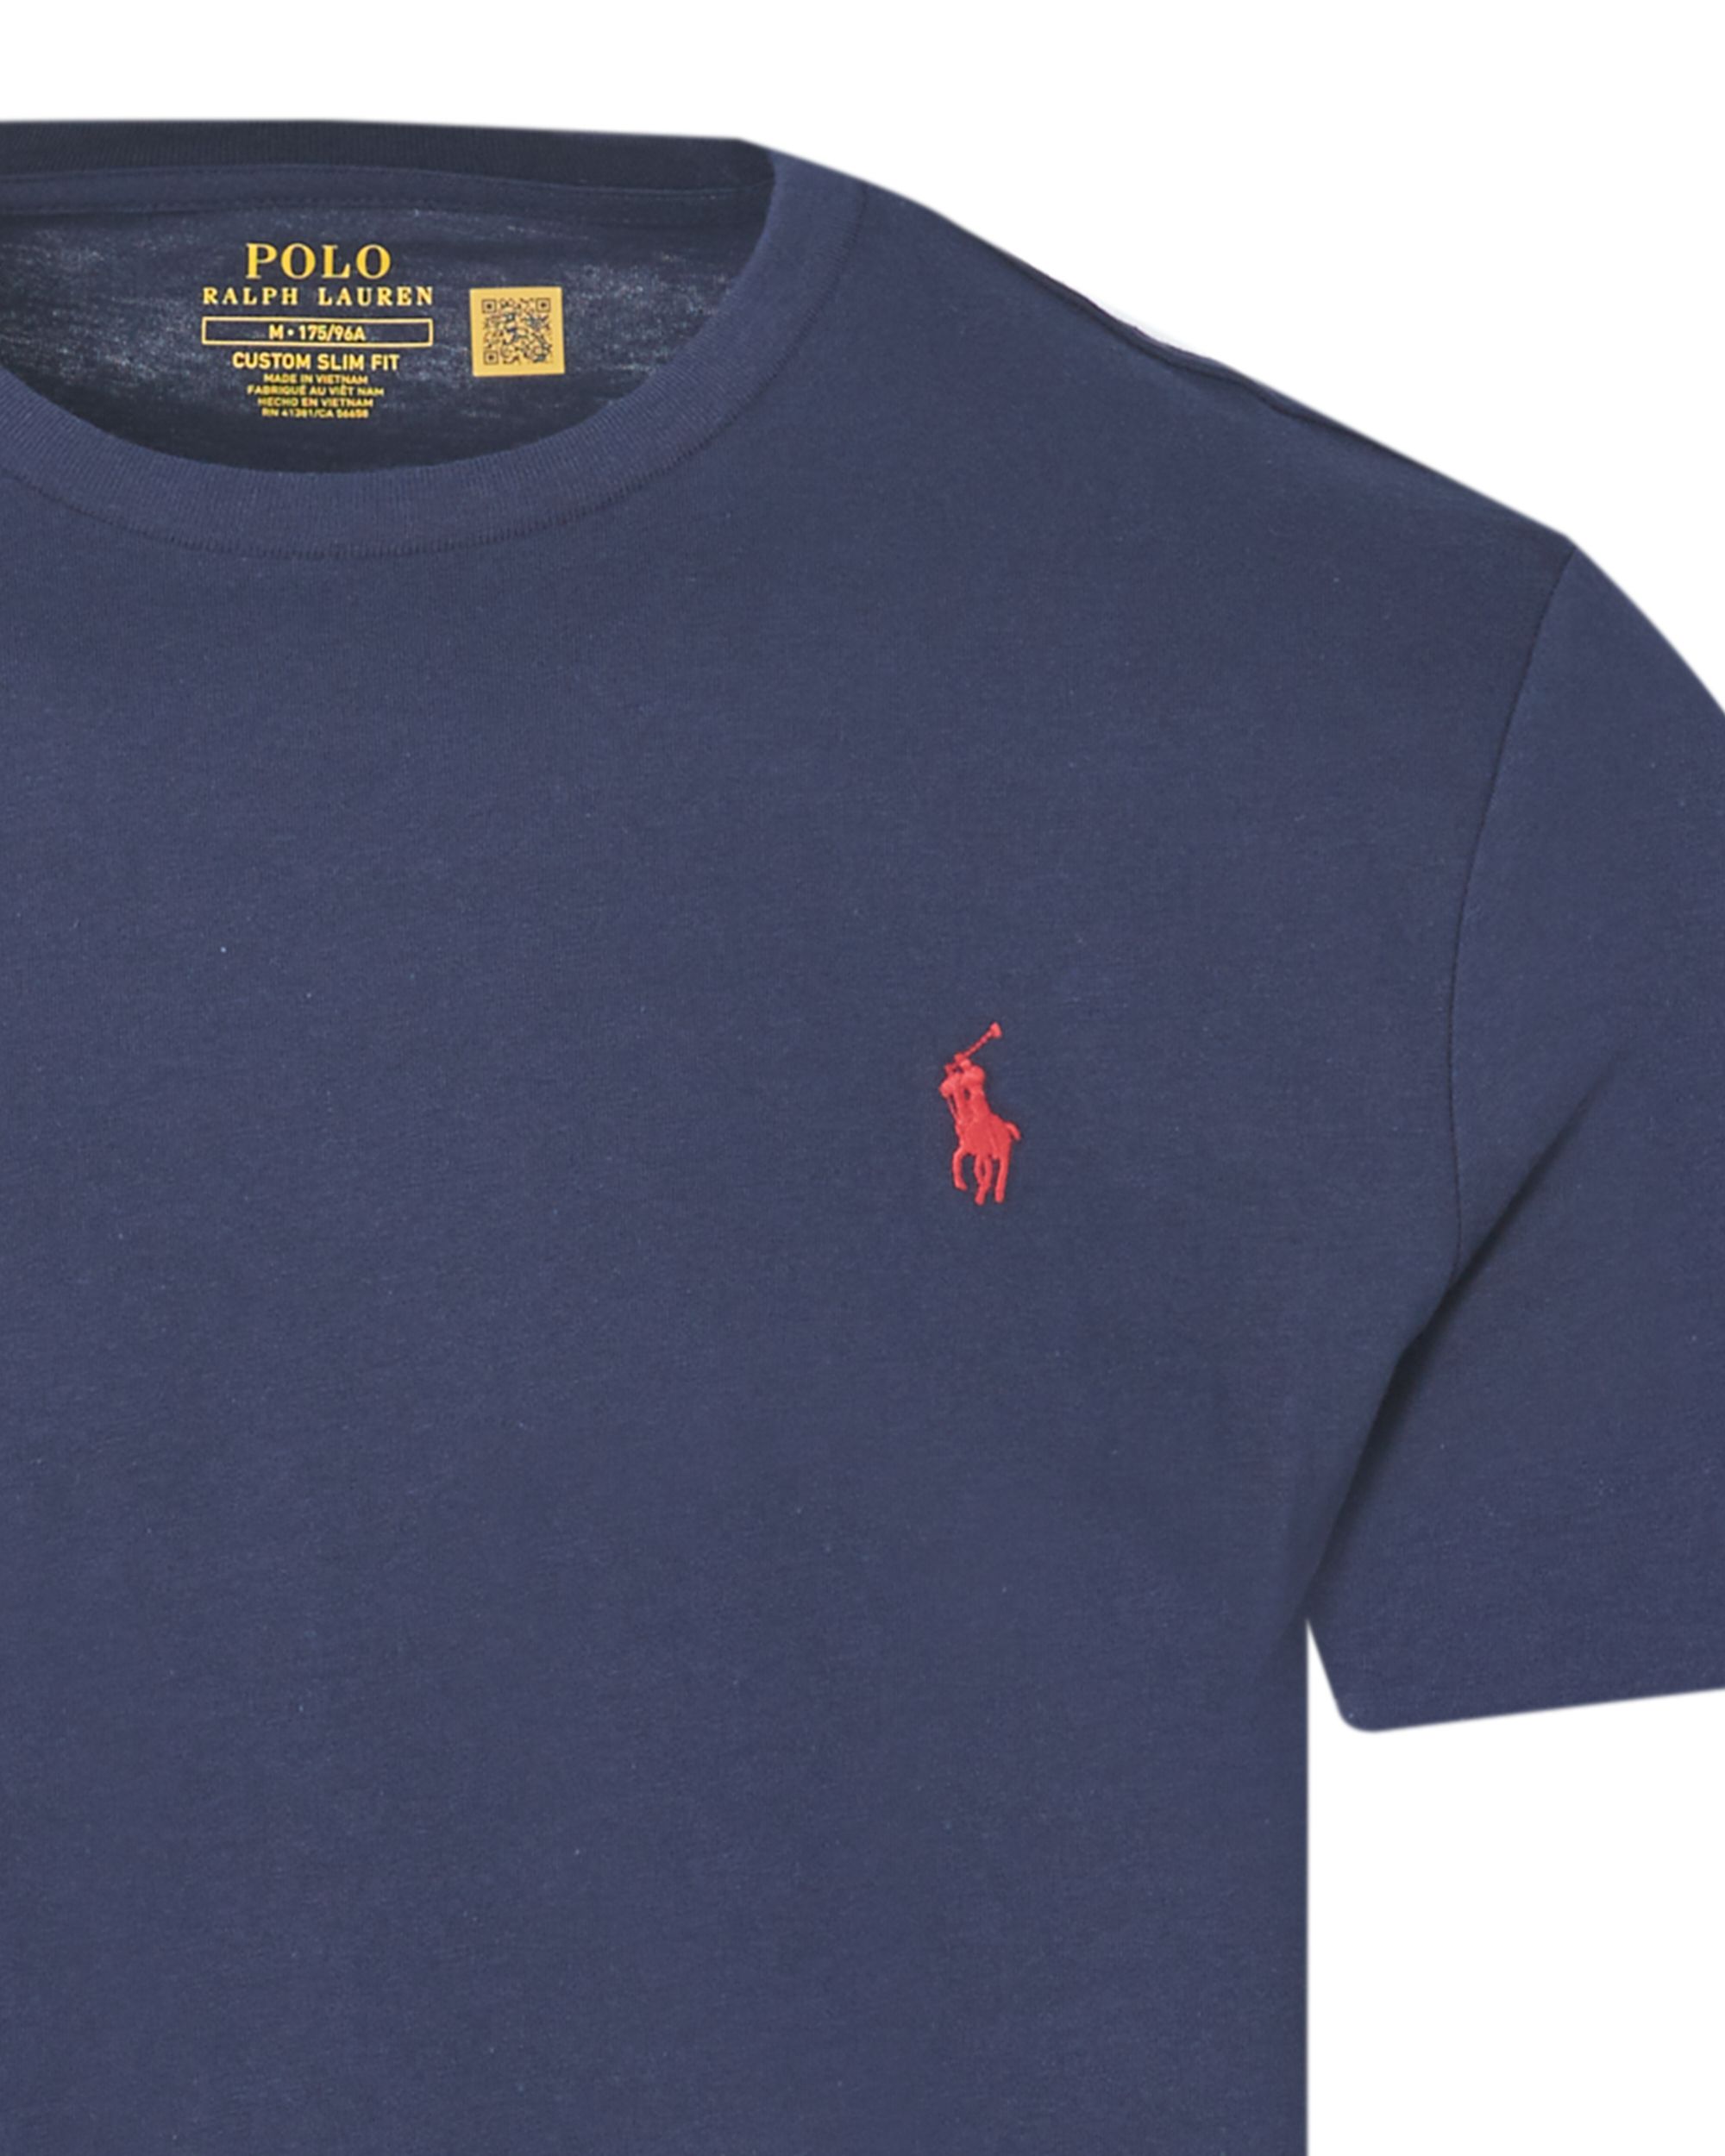 Polo Ralph Lauren Custom Slim fit T-shirt KM Blauw 047456-004-L